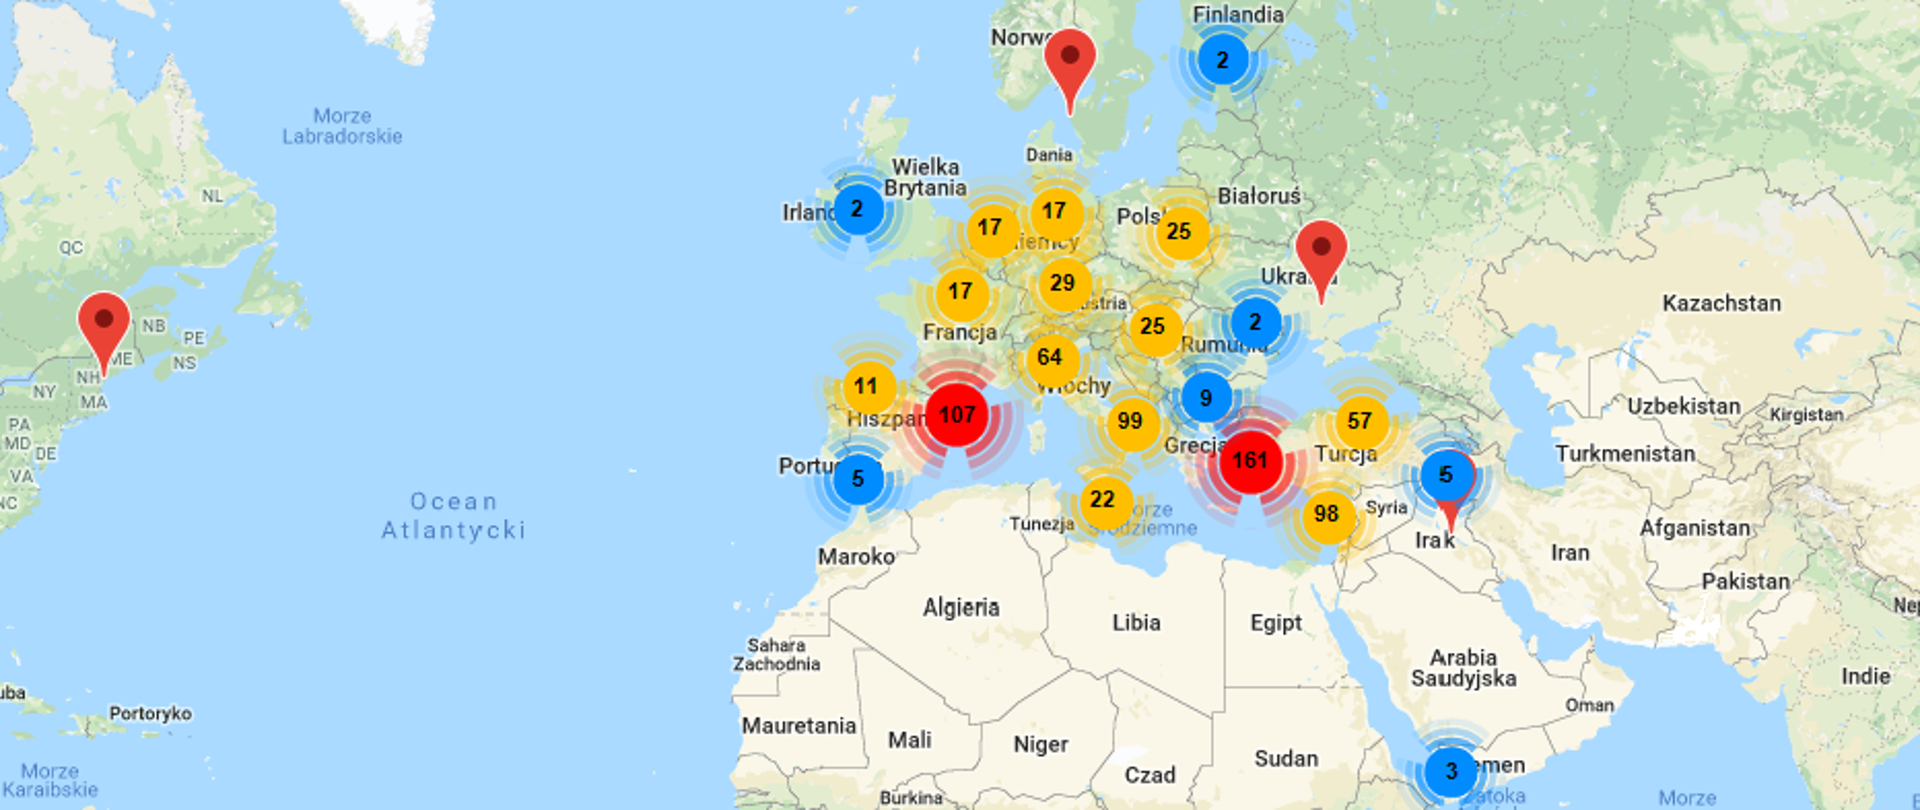 Na obrazku widać ilości zgłoszonych inicjatyw na mapie Europy pobliskich regionów świata - wyświetla się ponad 20 miejsc reprezentujących łączne ilości inicjatyw zgłoszonych w pobliżu, w każdym od kilku do ponad 100 inicjatyw.